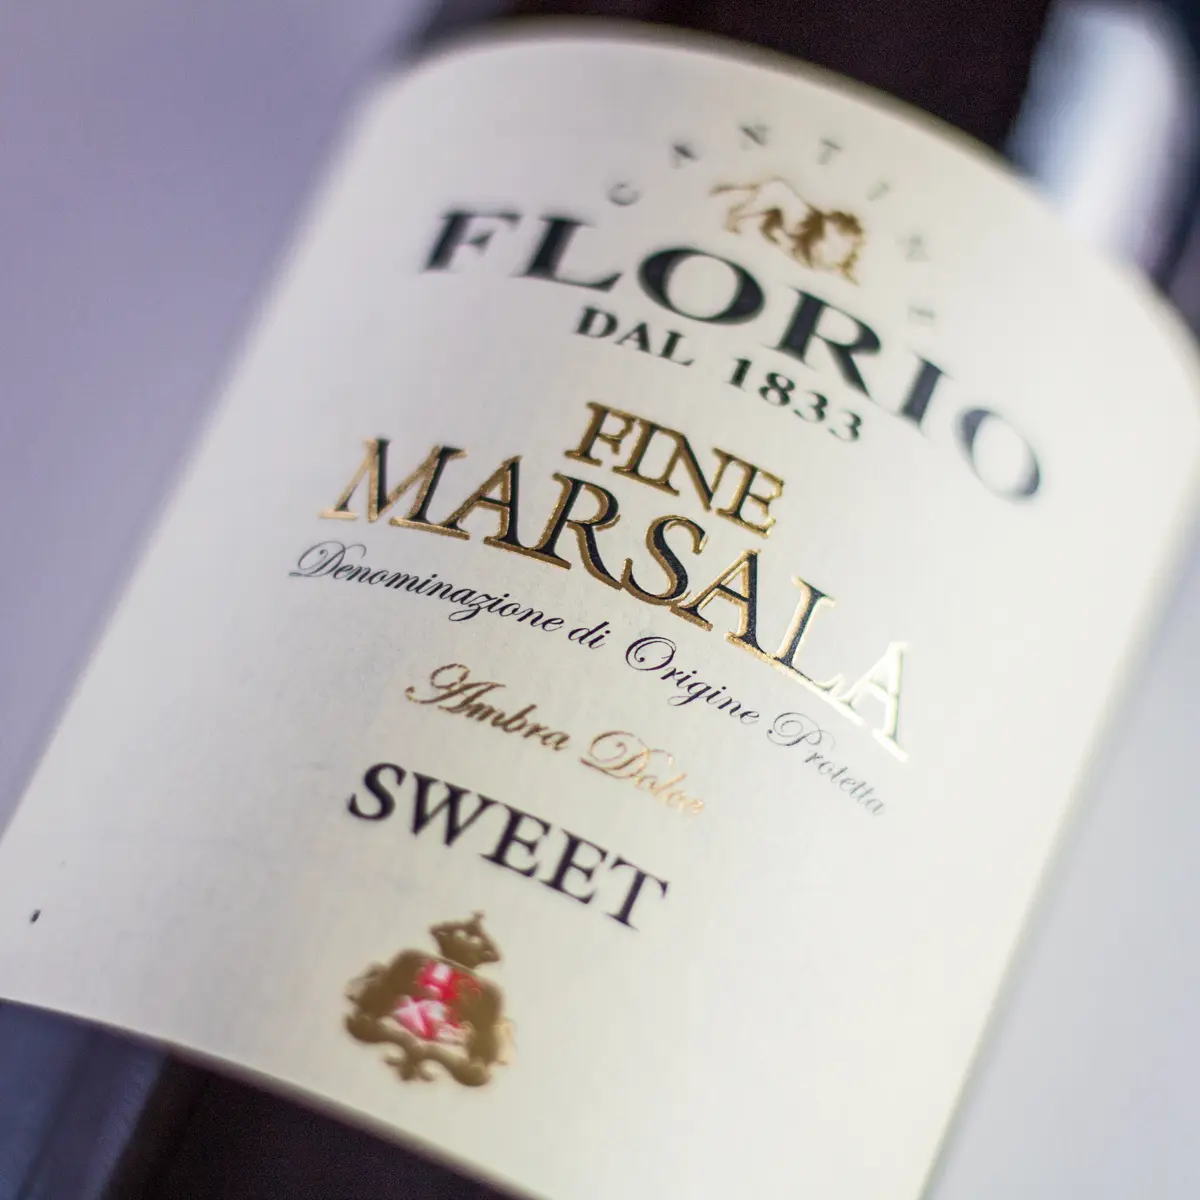 Grande immagine quadrata del sostituto del vino Marsala che mostra l'etichetta della bottiglia.